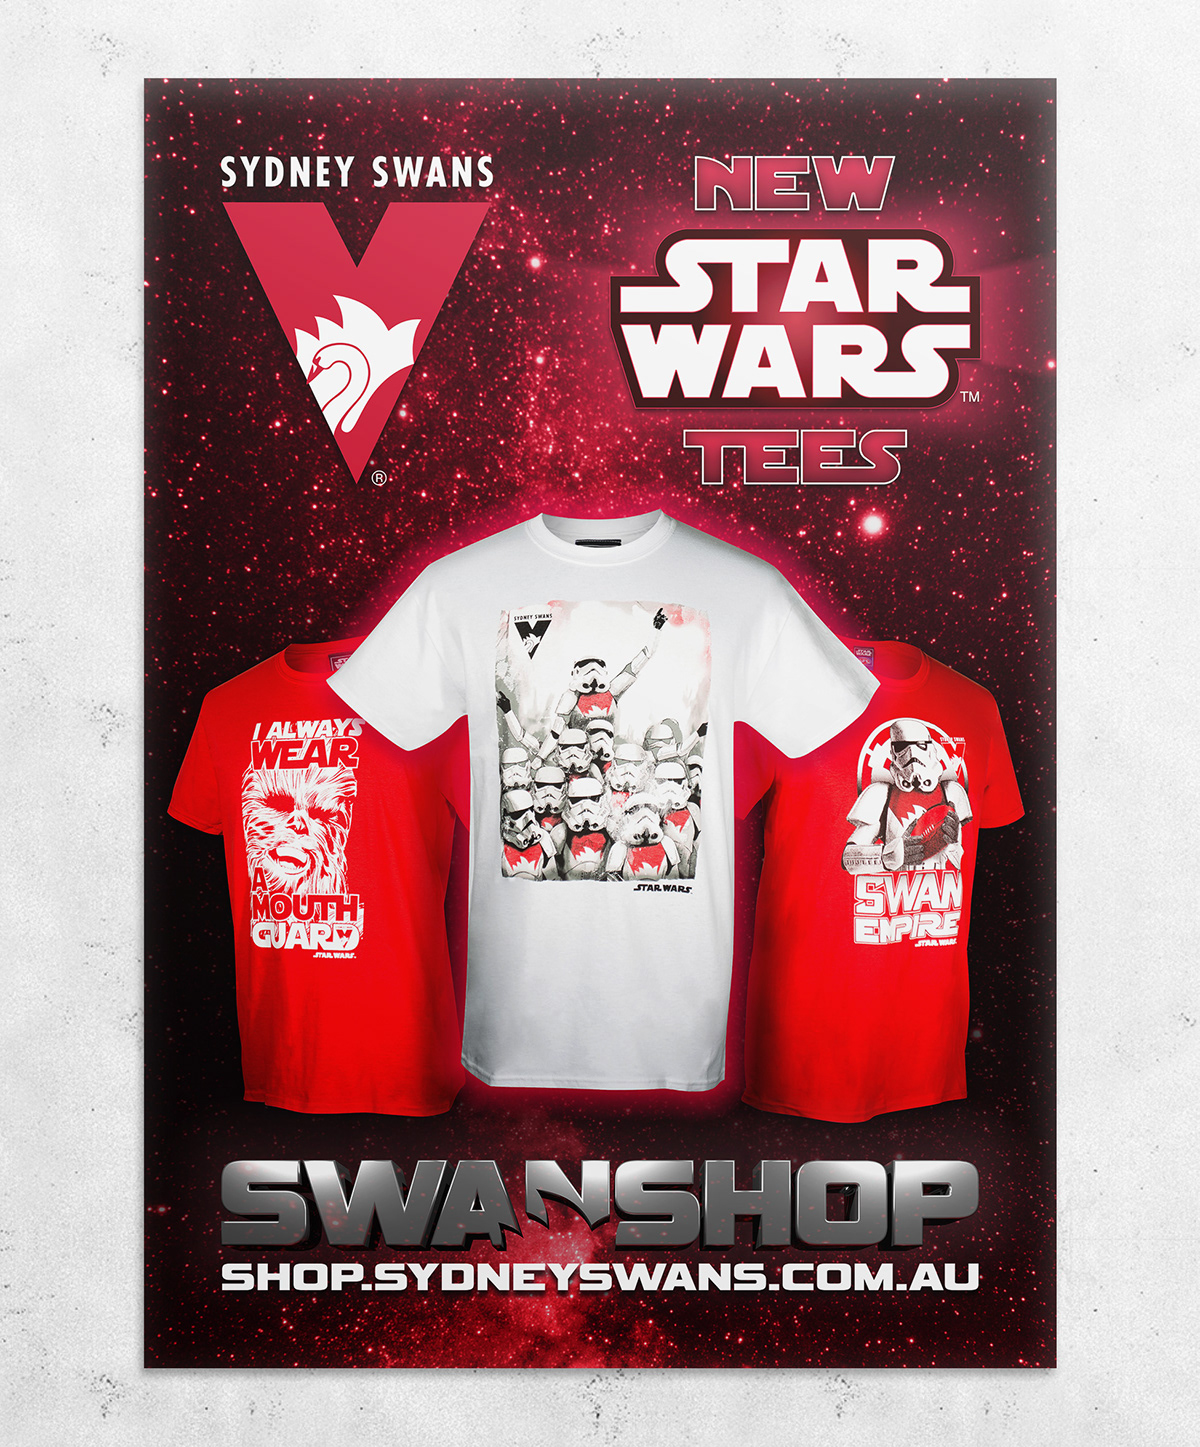 Sydney Swans poster scoreboard star wars